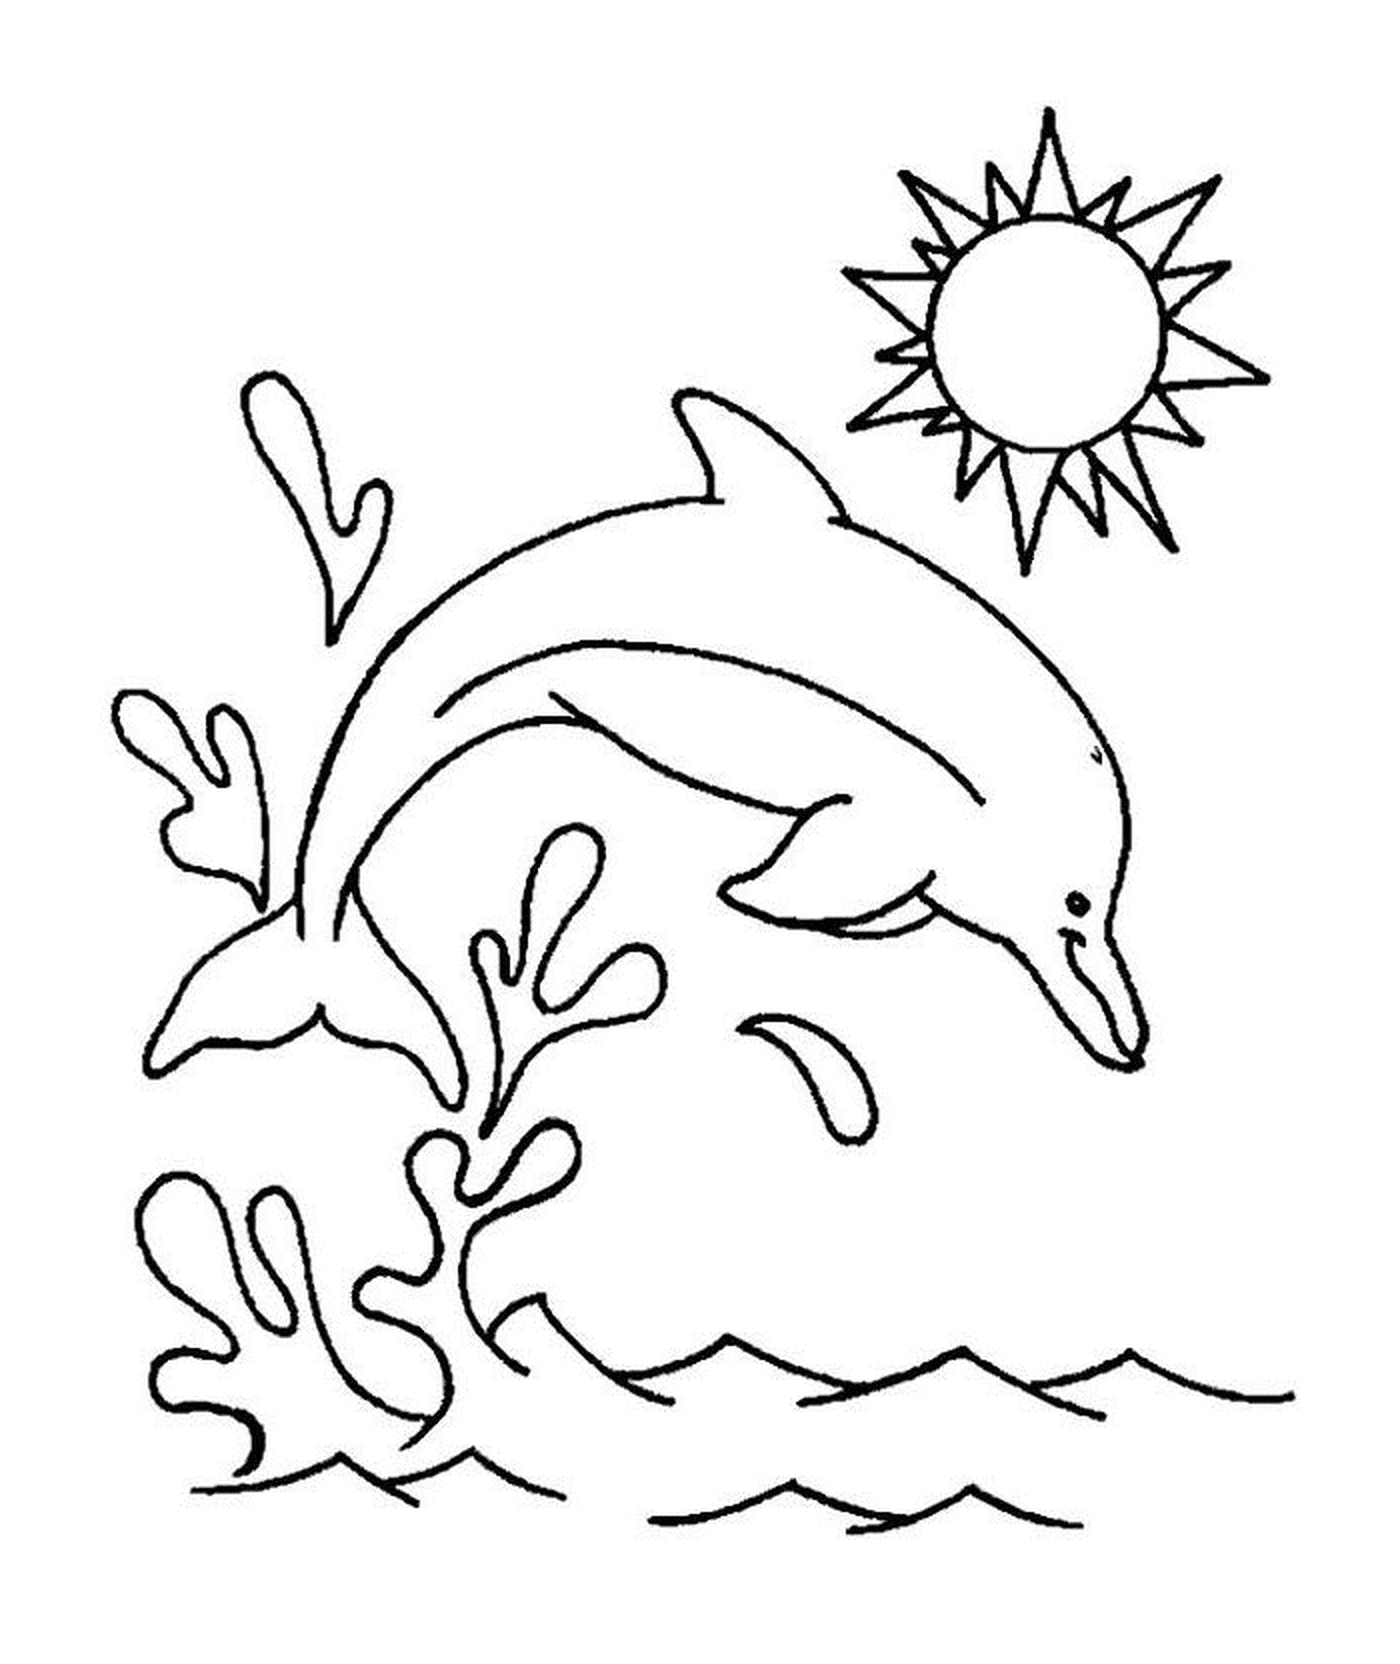  Mergulho de golfinhos na água 